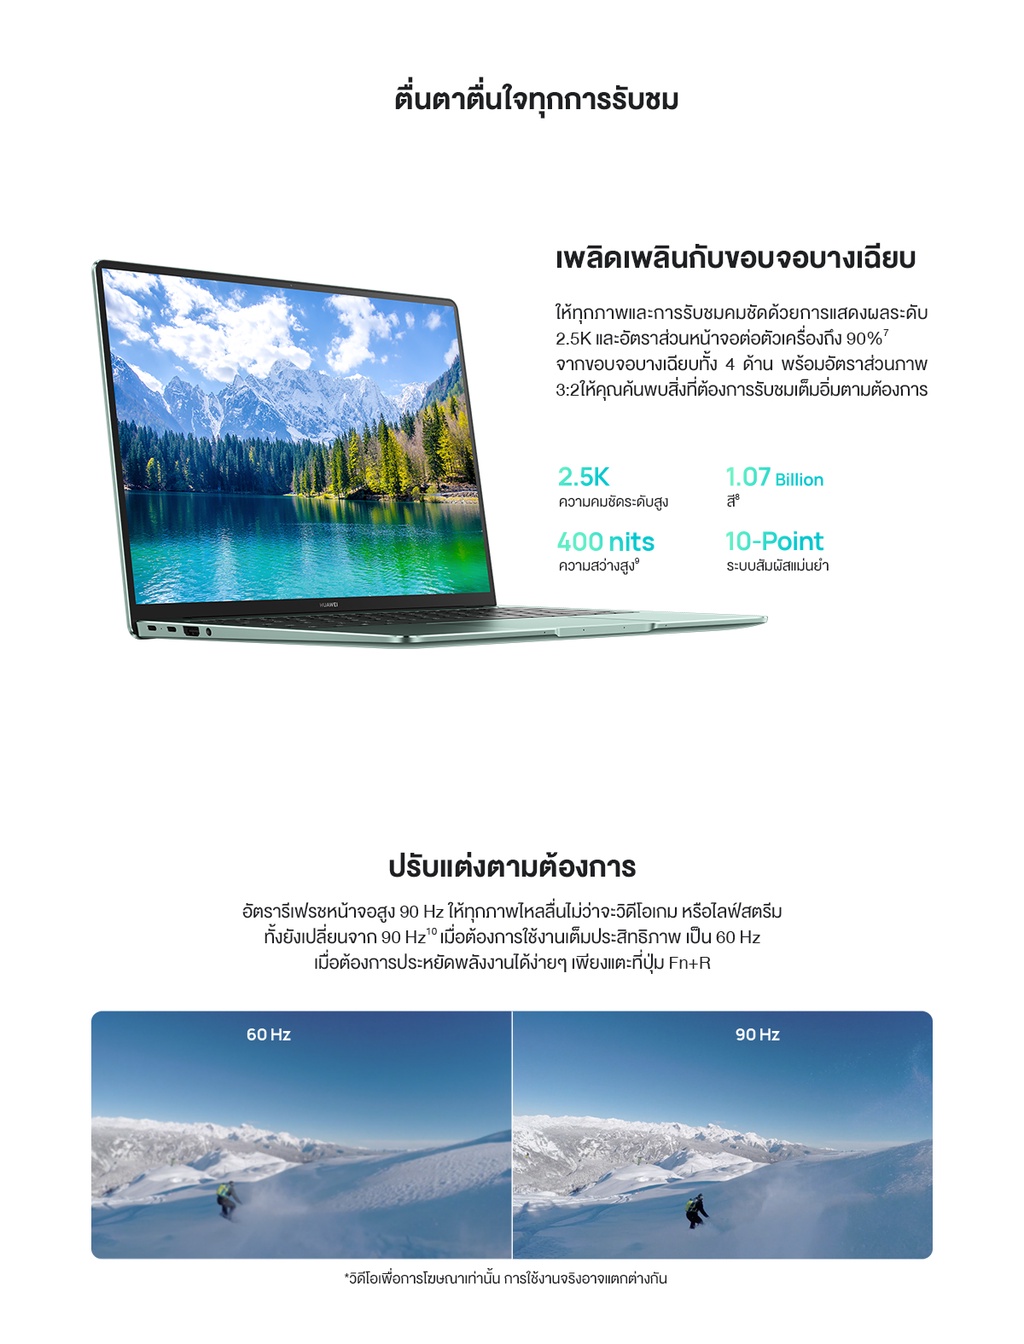 มุมมองเพิ่มเติมของสินค้า HUAWEI MateBook 14s แล็ปท็อป  11th Gen H Series & Touch Screen Intel 2.5K Huawei FullView Display มาพร้อมกับอัตรารีเฟรชหน้าจอ90Hz ร้านค้าอย่างเป็นทาง